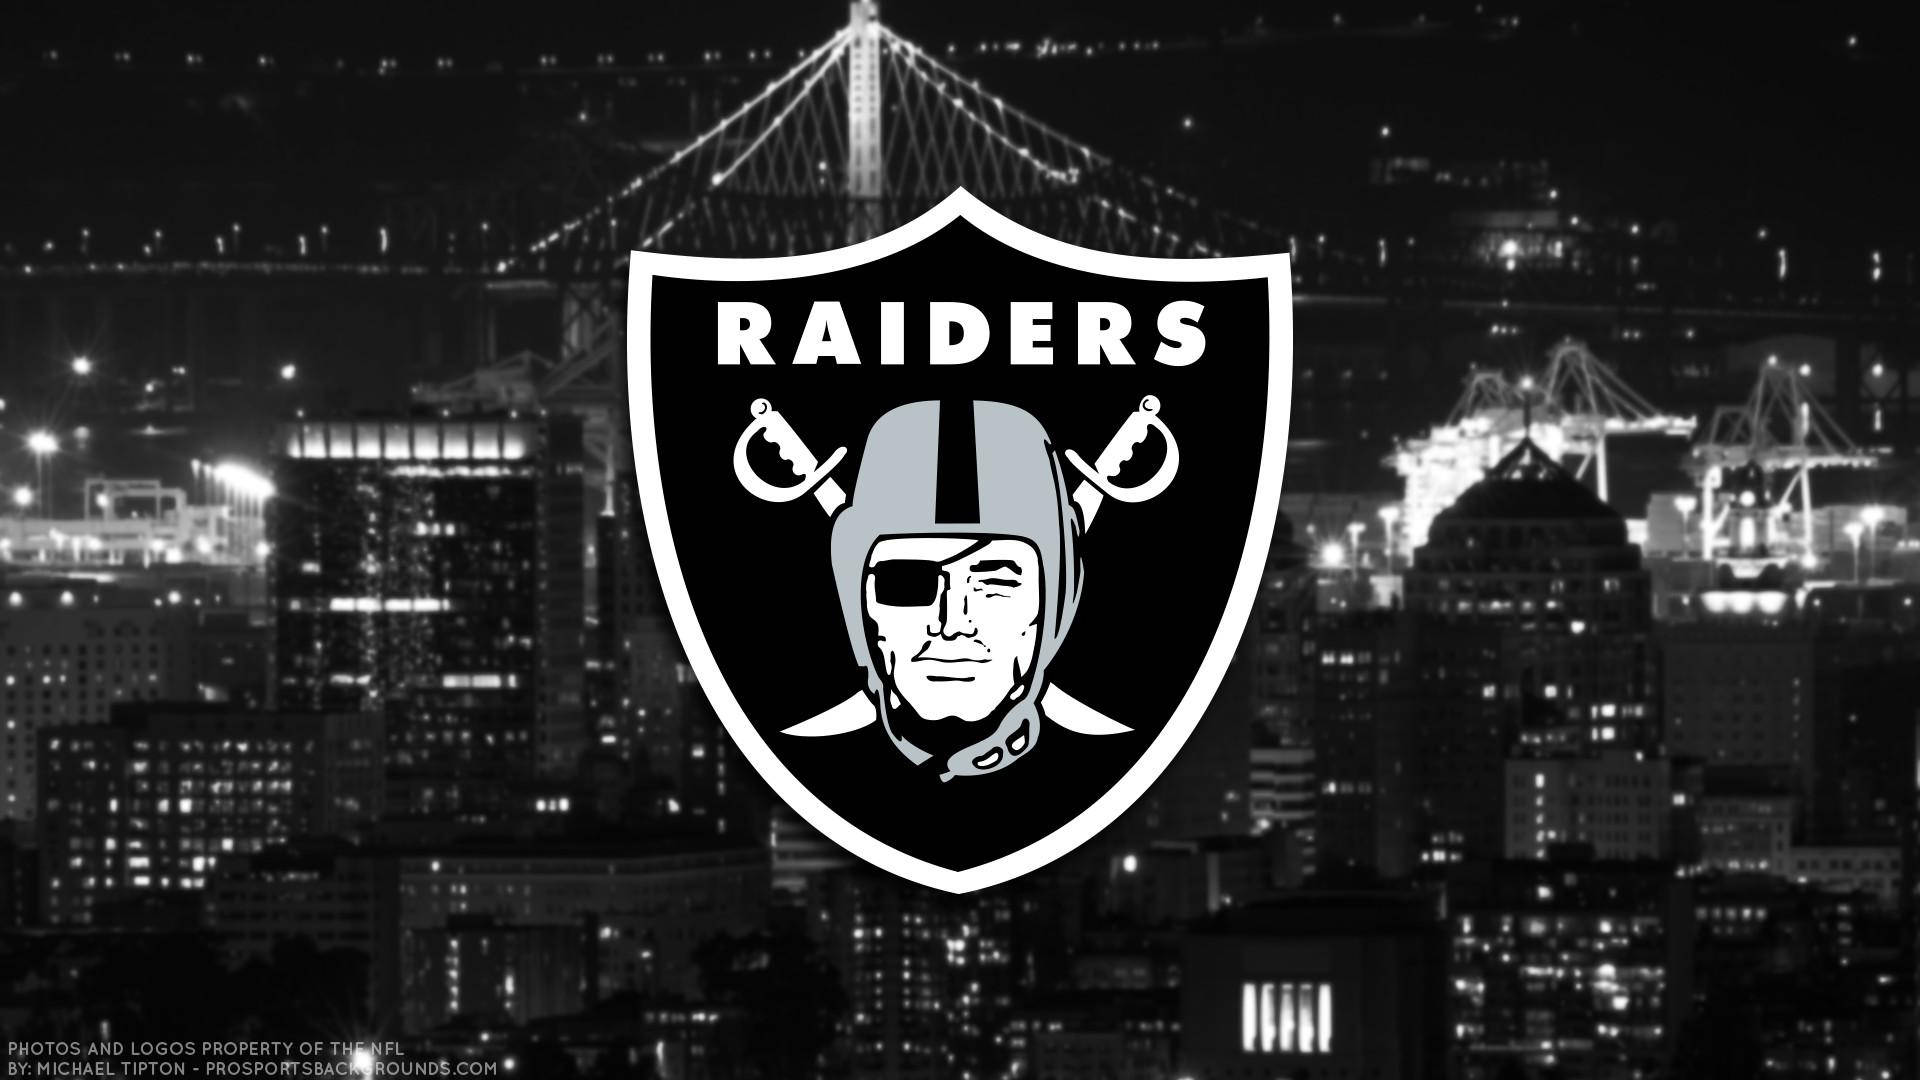 Logotipode Los Raiders De Las Vegas, Equipo De La Nfl. Fondo de pantalla